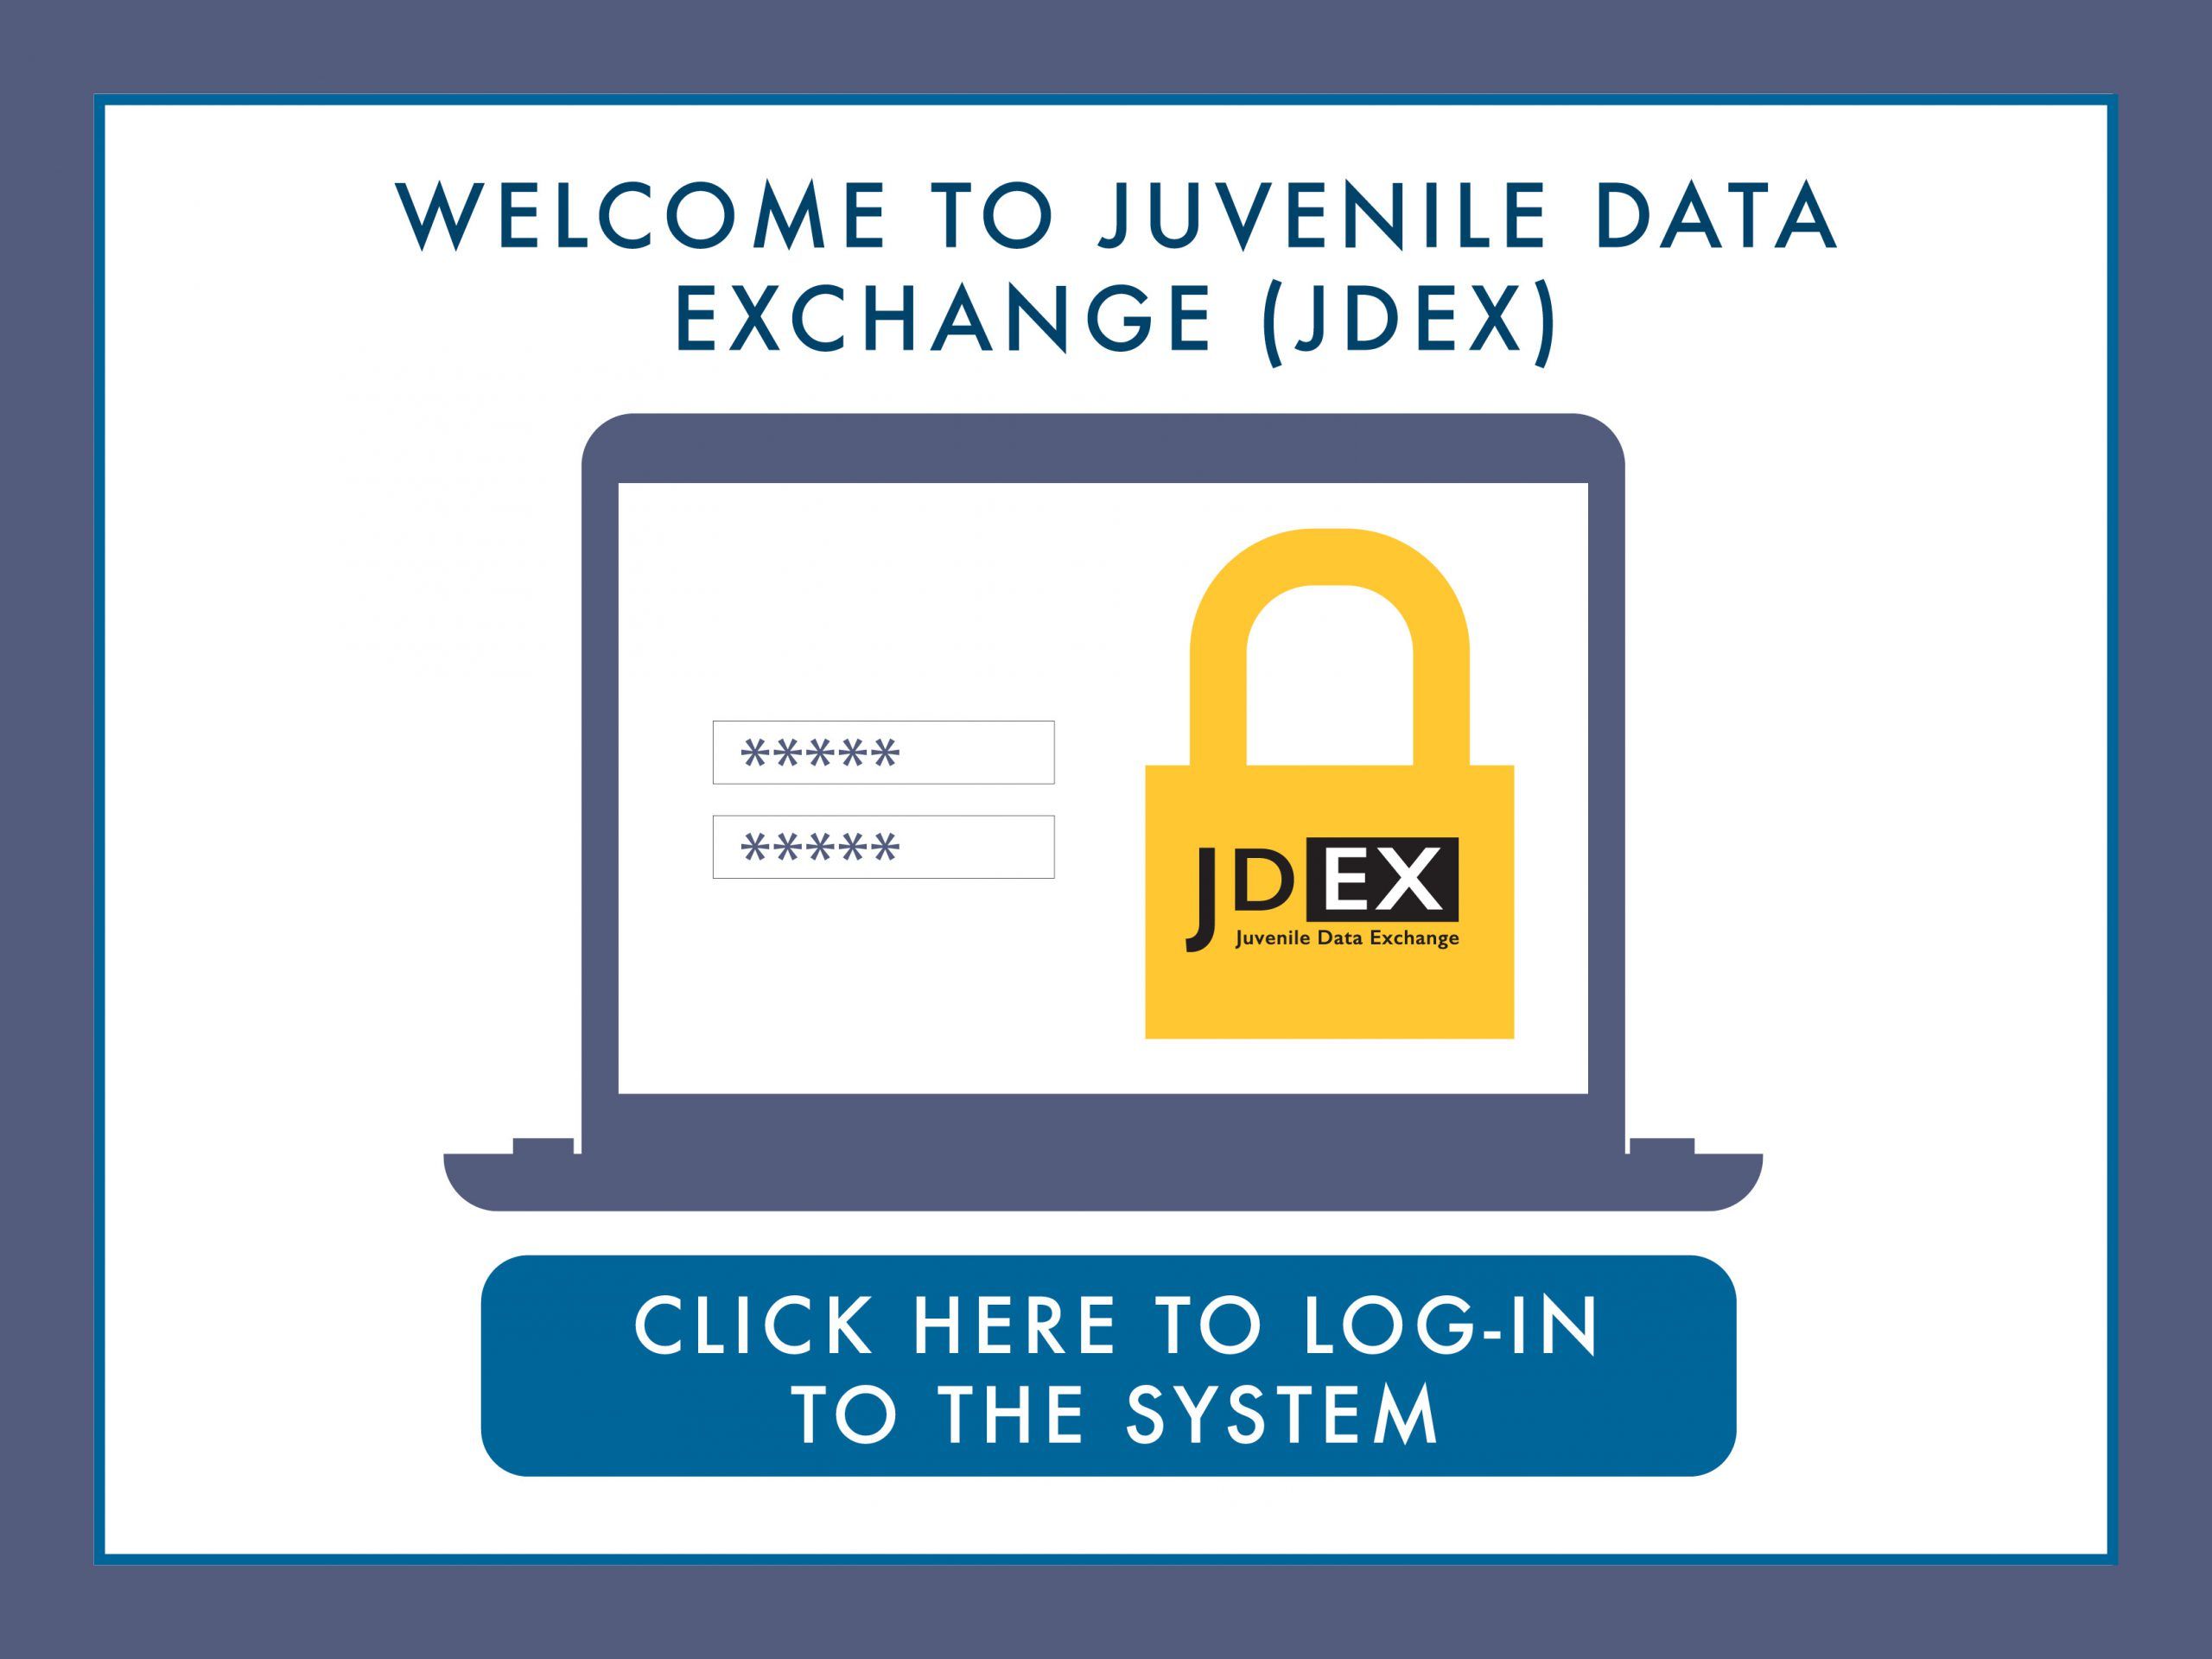 Juvenile Data Exchange